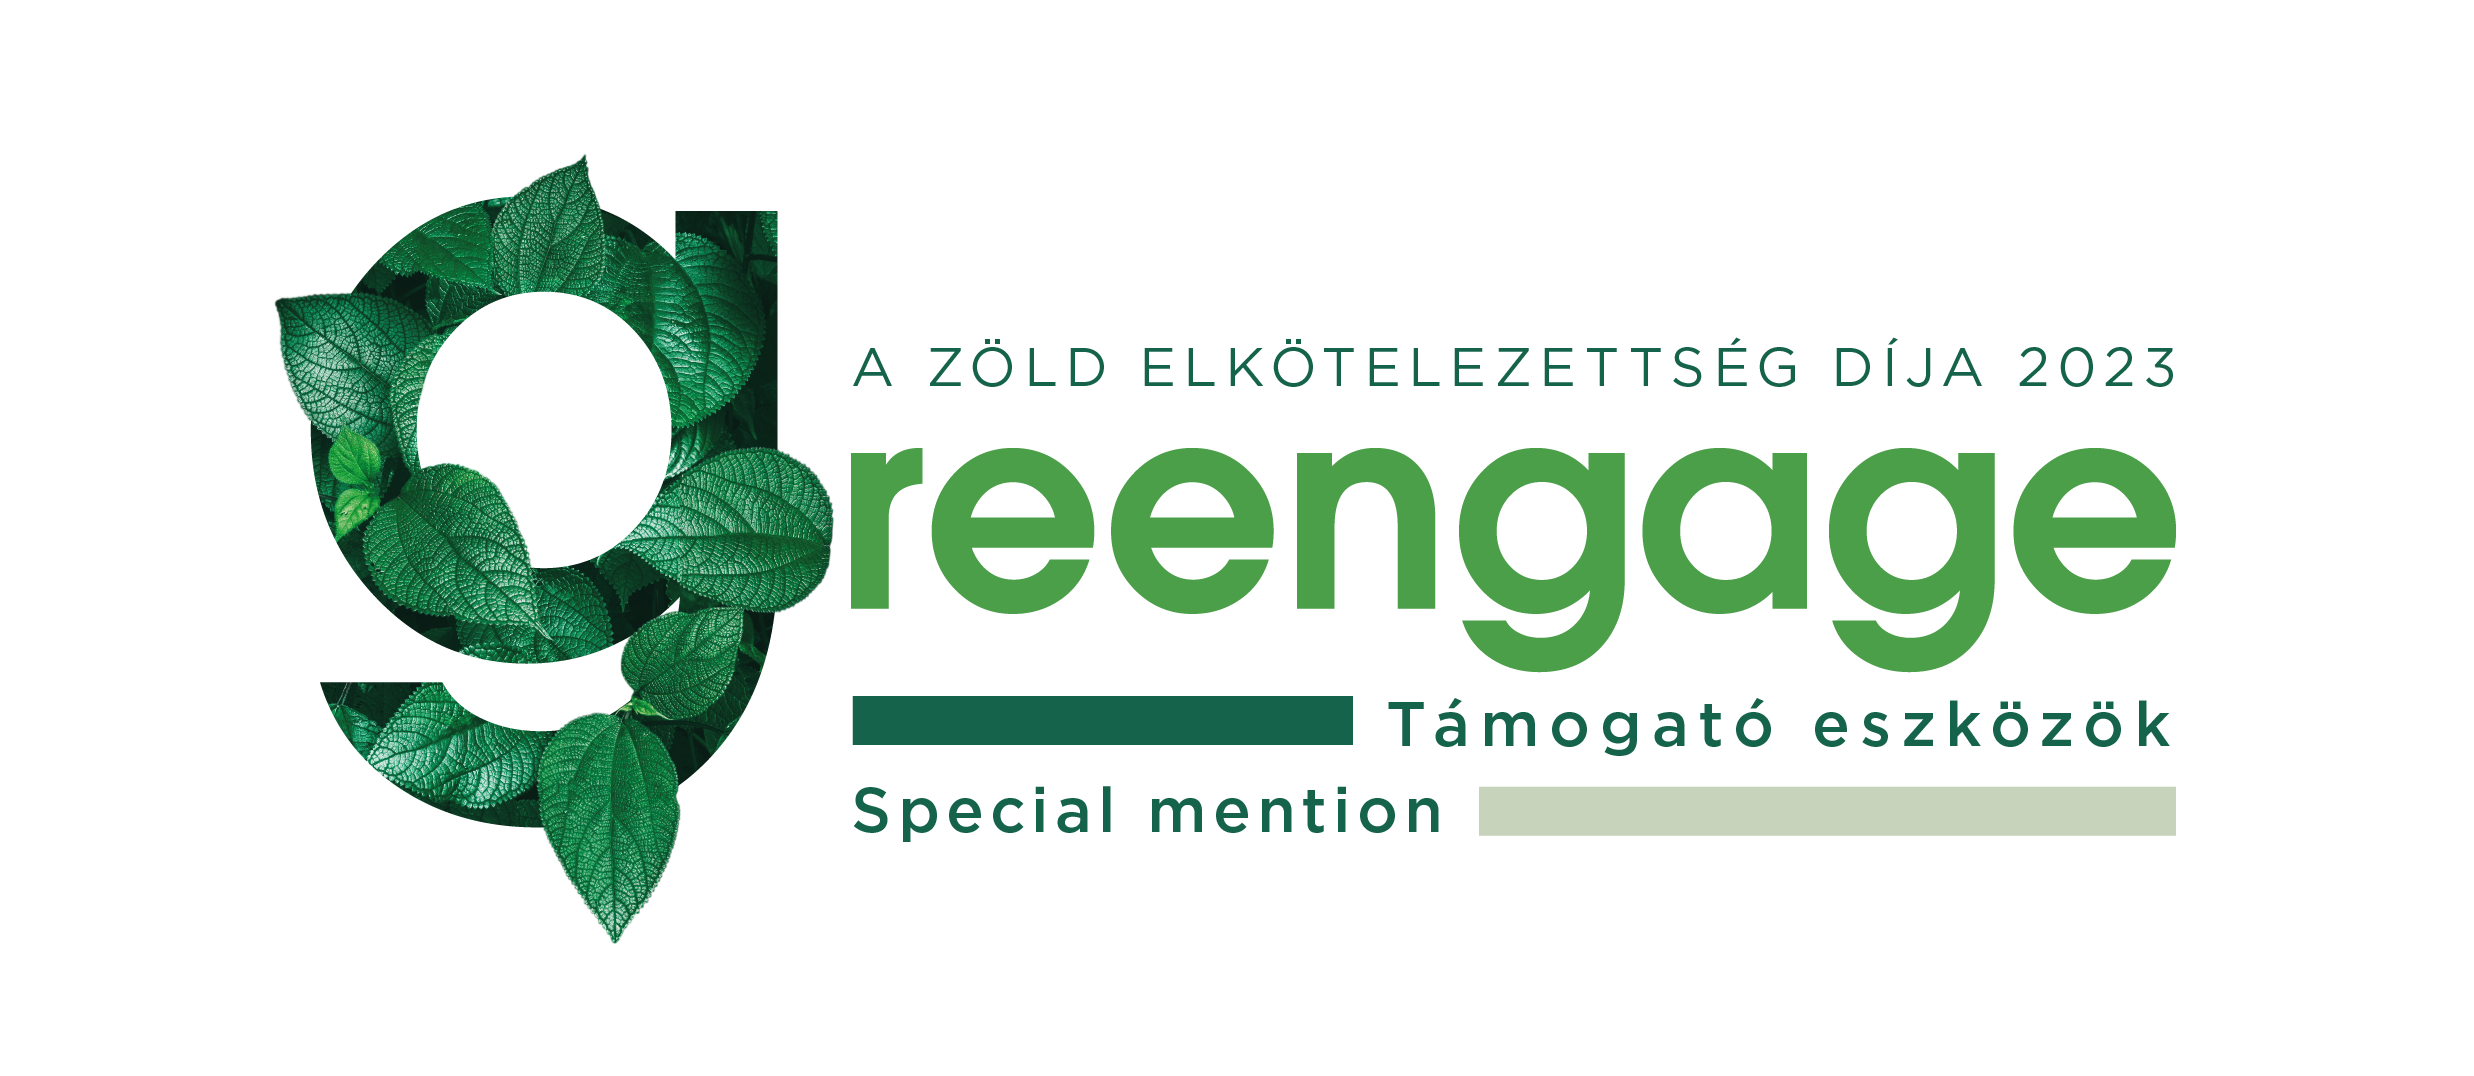 Greengage - A zöld elkötelezettség díja 2023